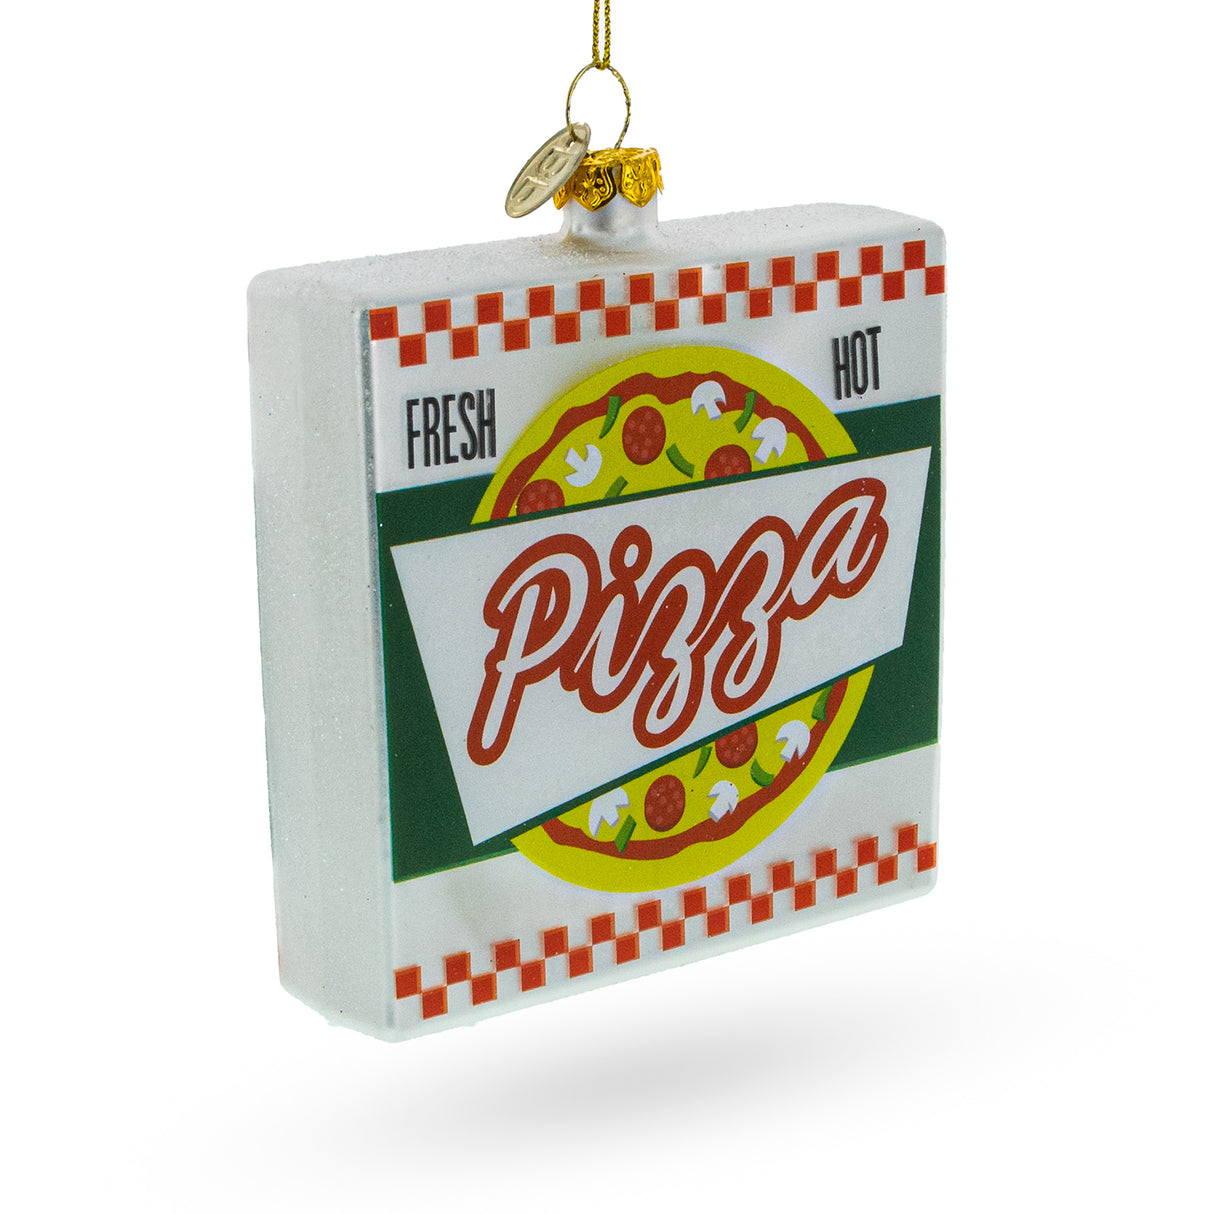 Delicious Pizza Box - Blown Glass Christmas Ornament in Multi color,  shape